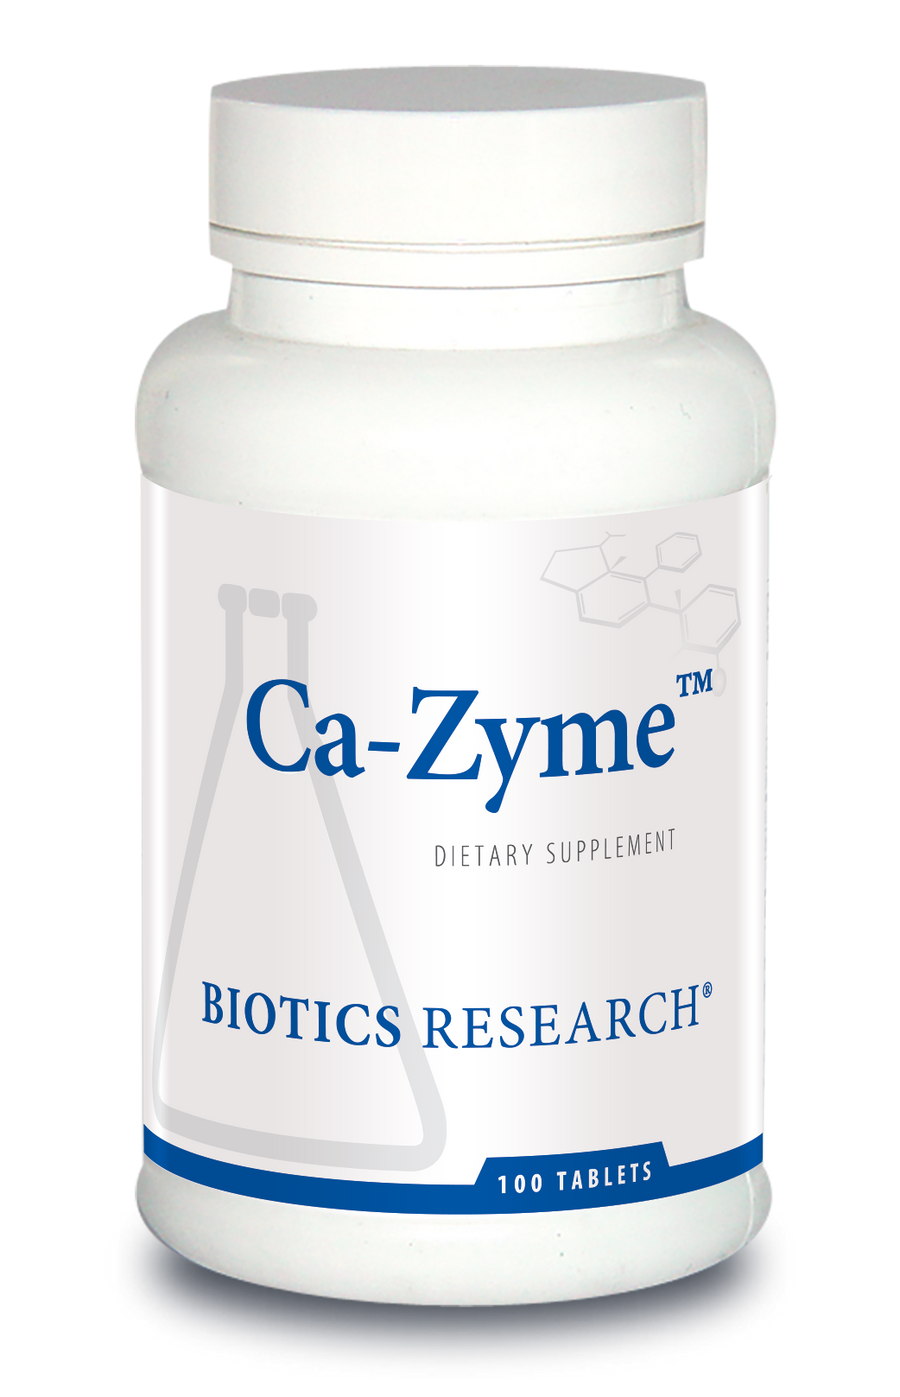 Ca-Zyme™ (Calcium)